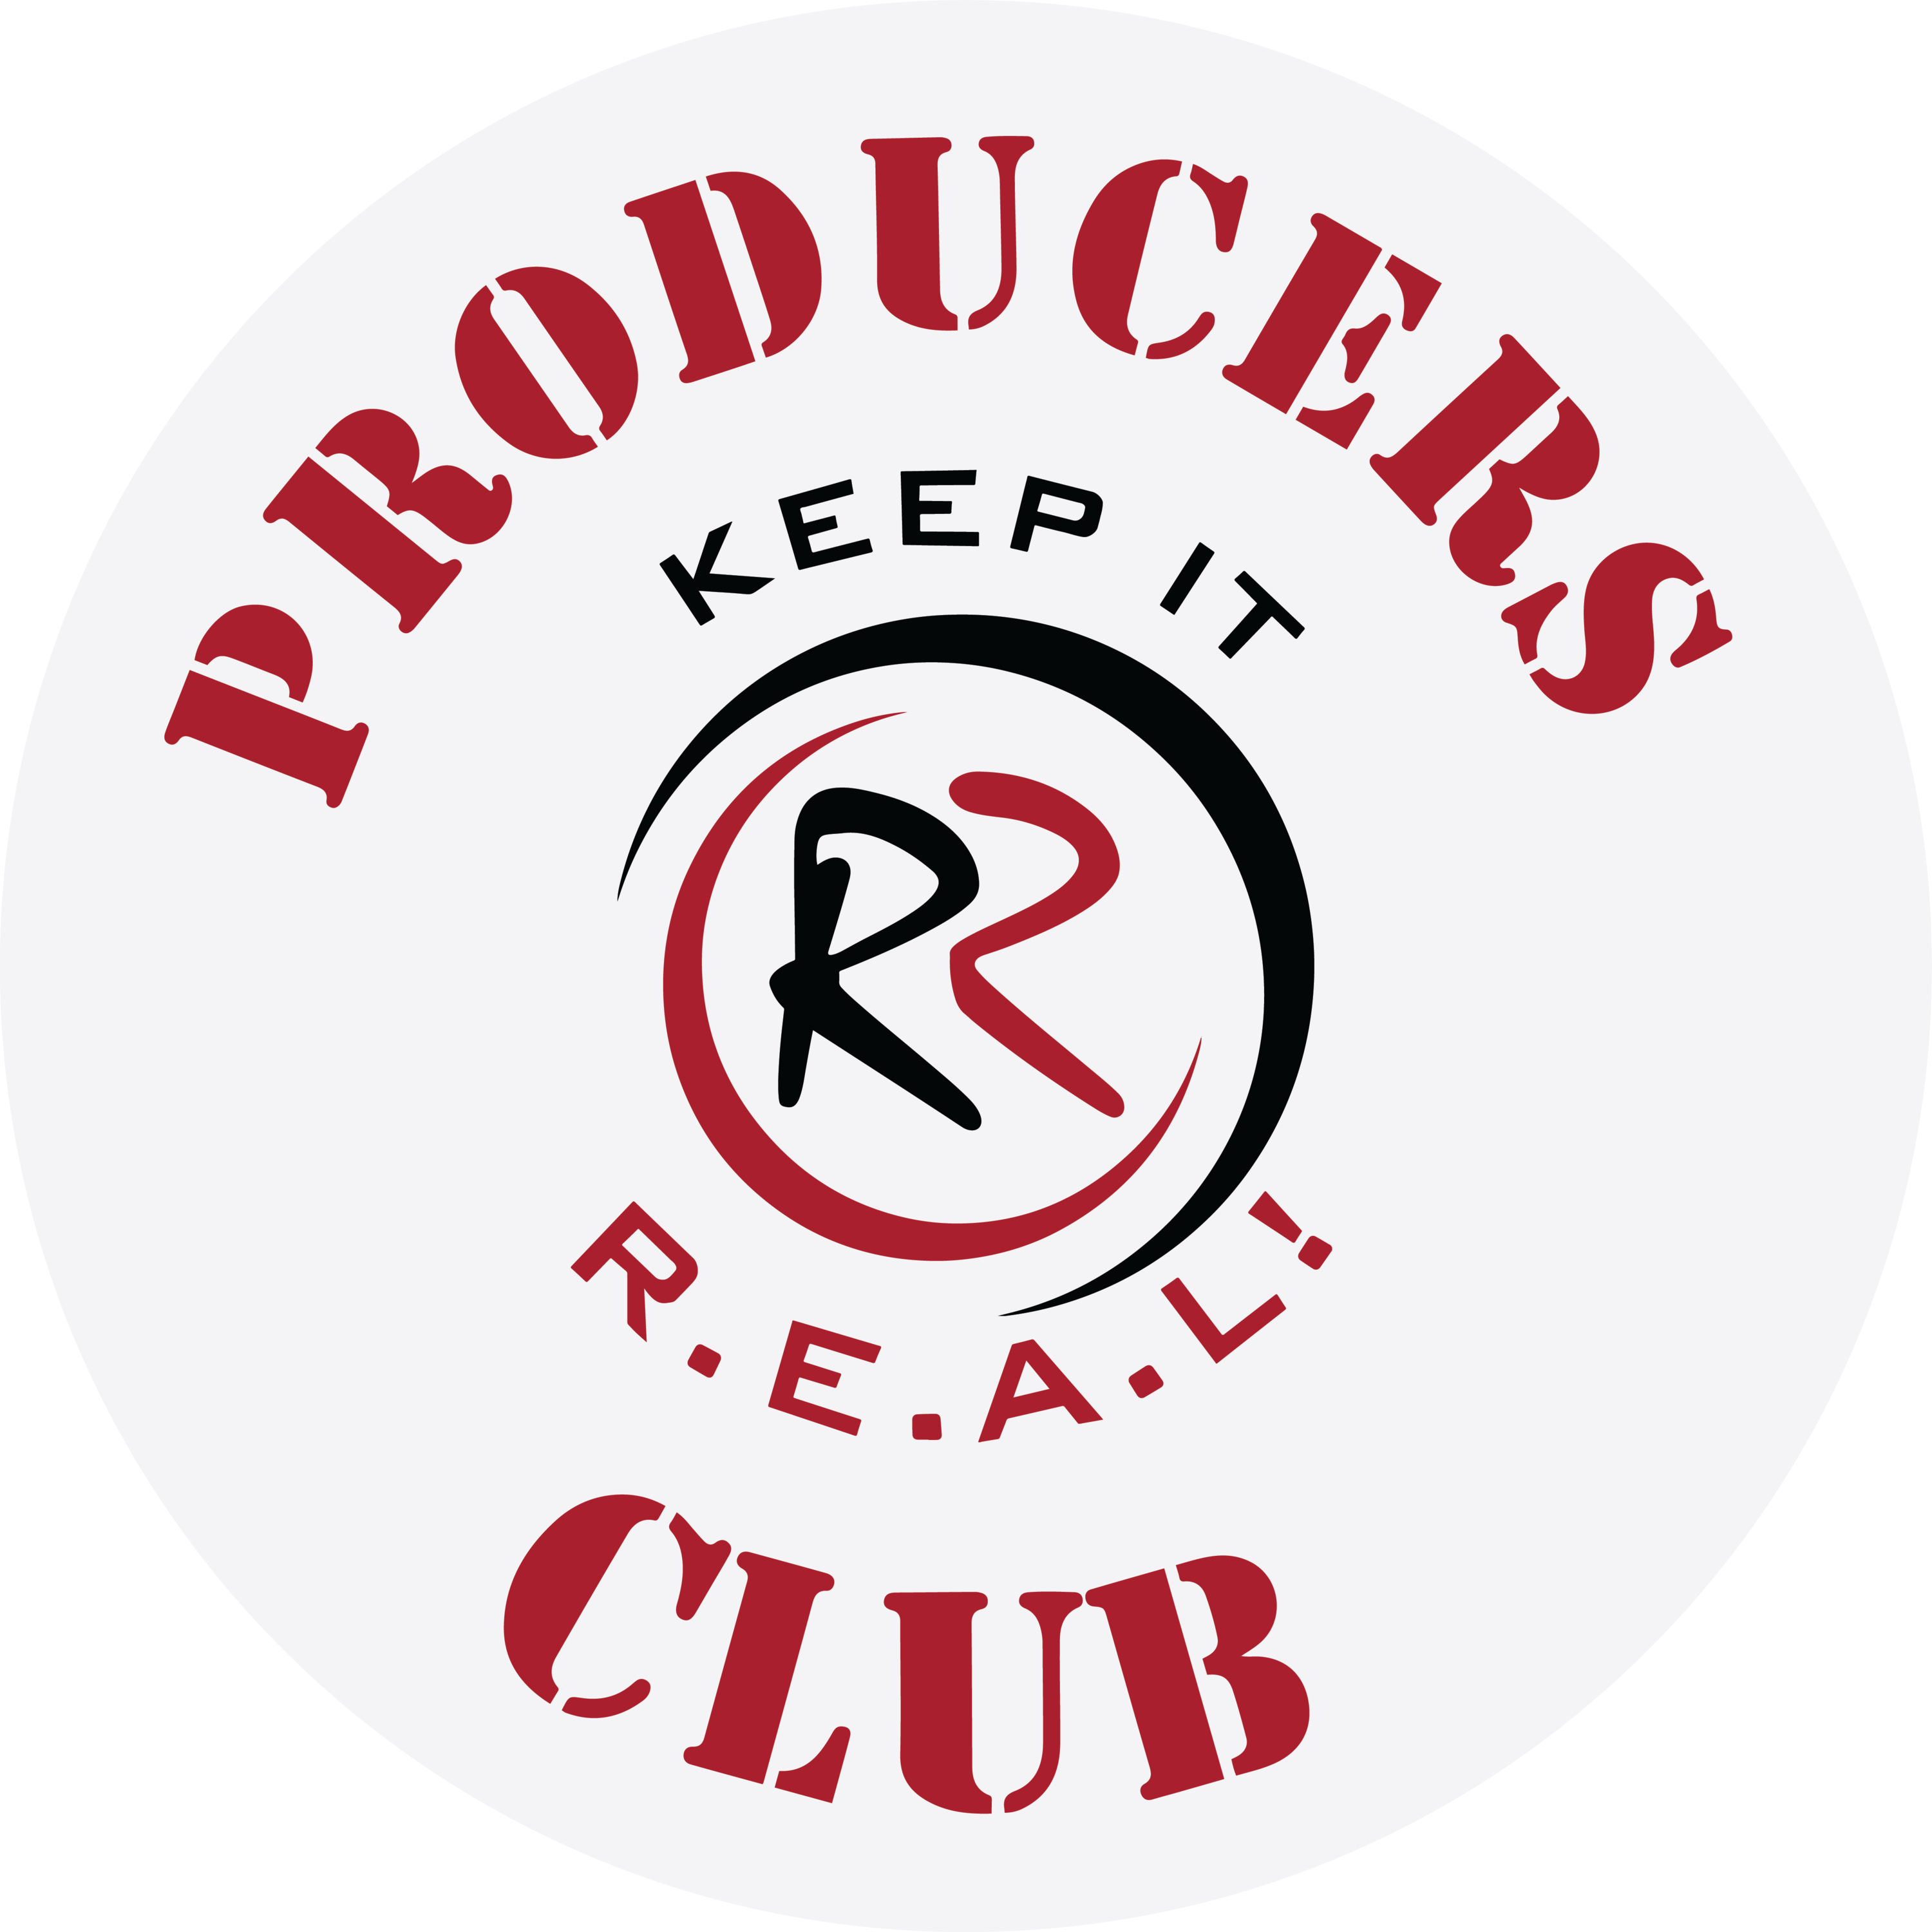 Robins Producers Club logo